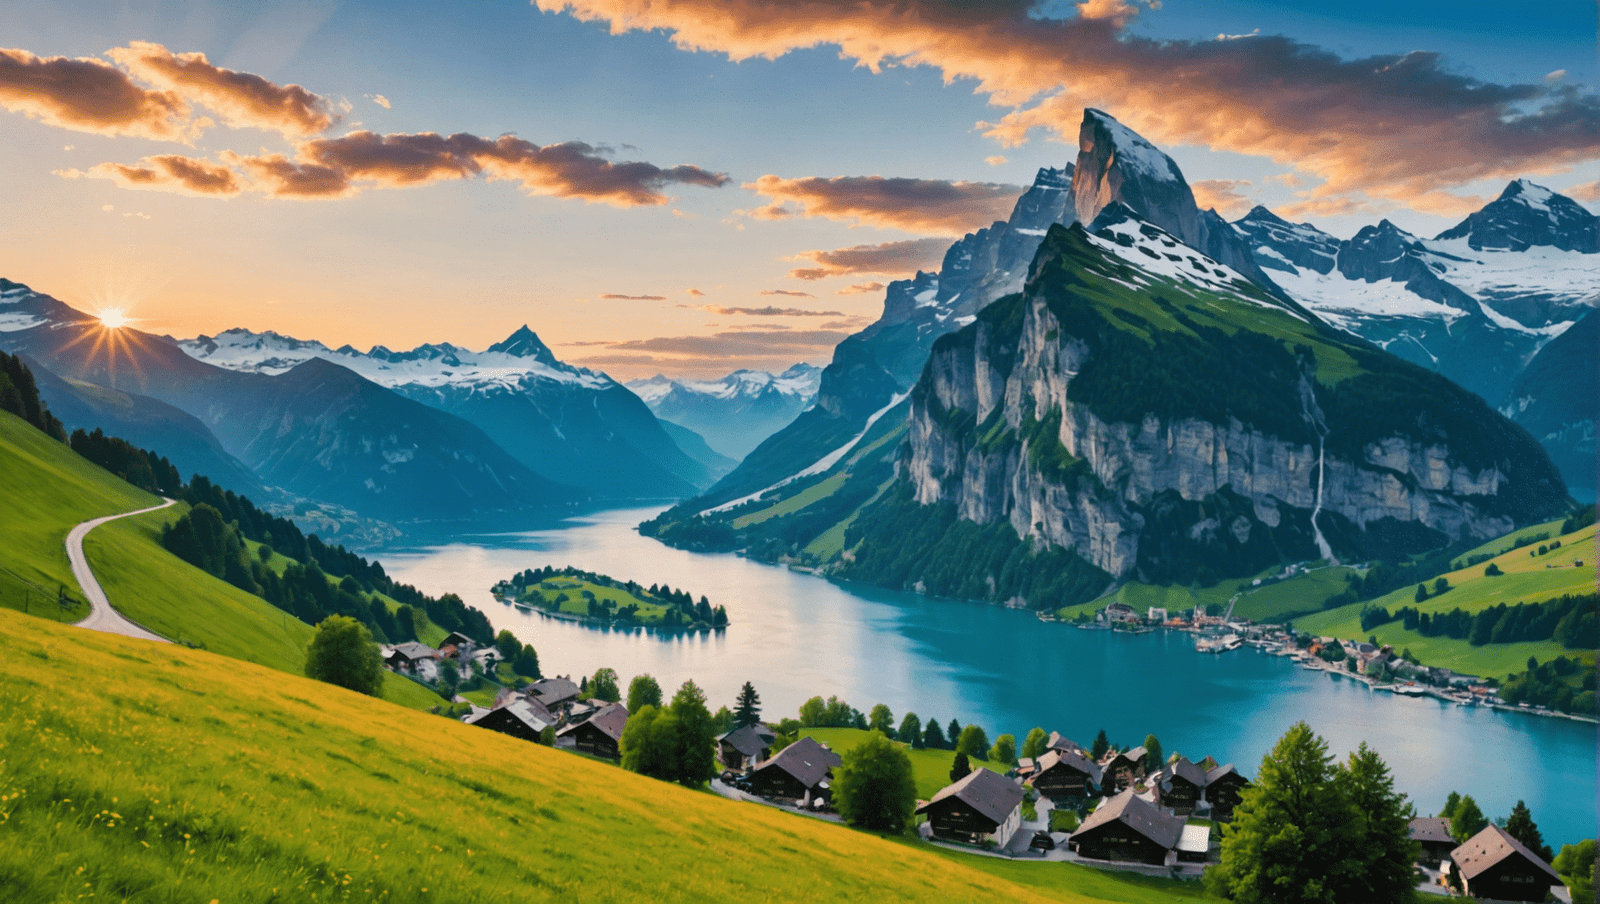 découvrez tout ce que vous devez savoir pour voyager en suisse dans ce guide complet : ses merveilles, ses attractions, sa culture et bien plus.